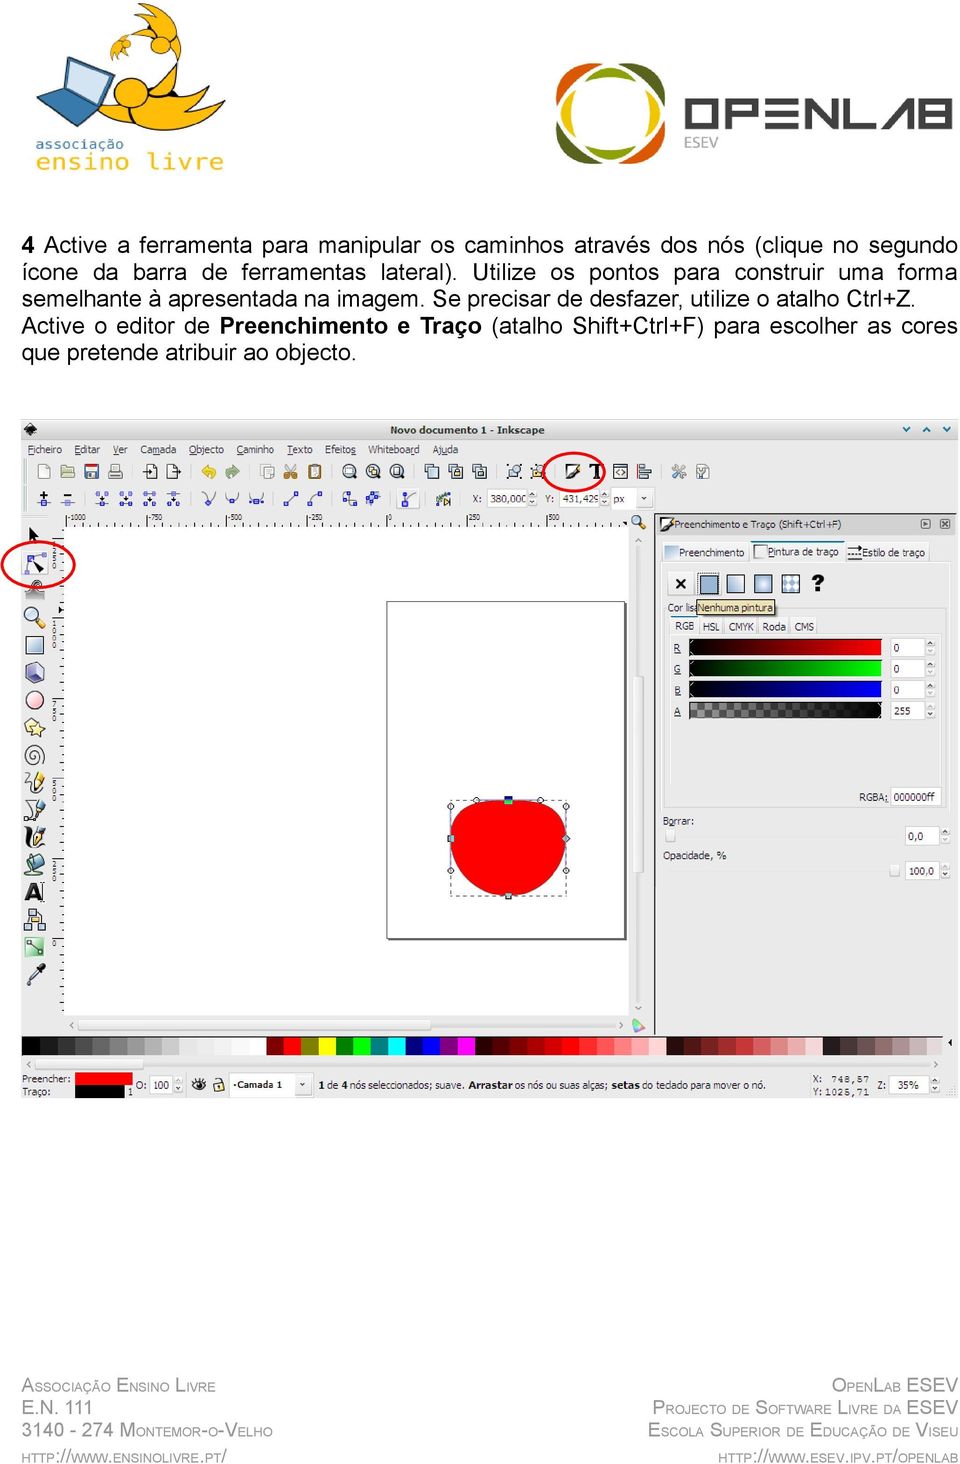 Utilize os pontos para construir uma forma semelhante à apresentada na imagem.